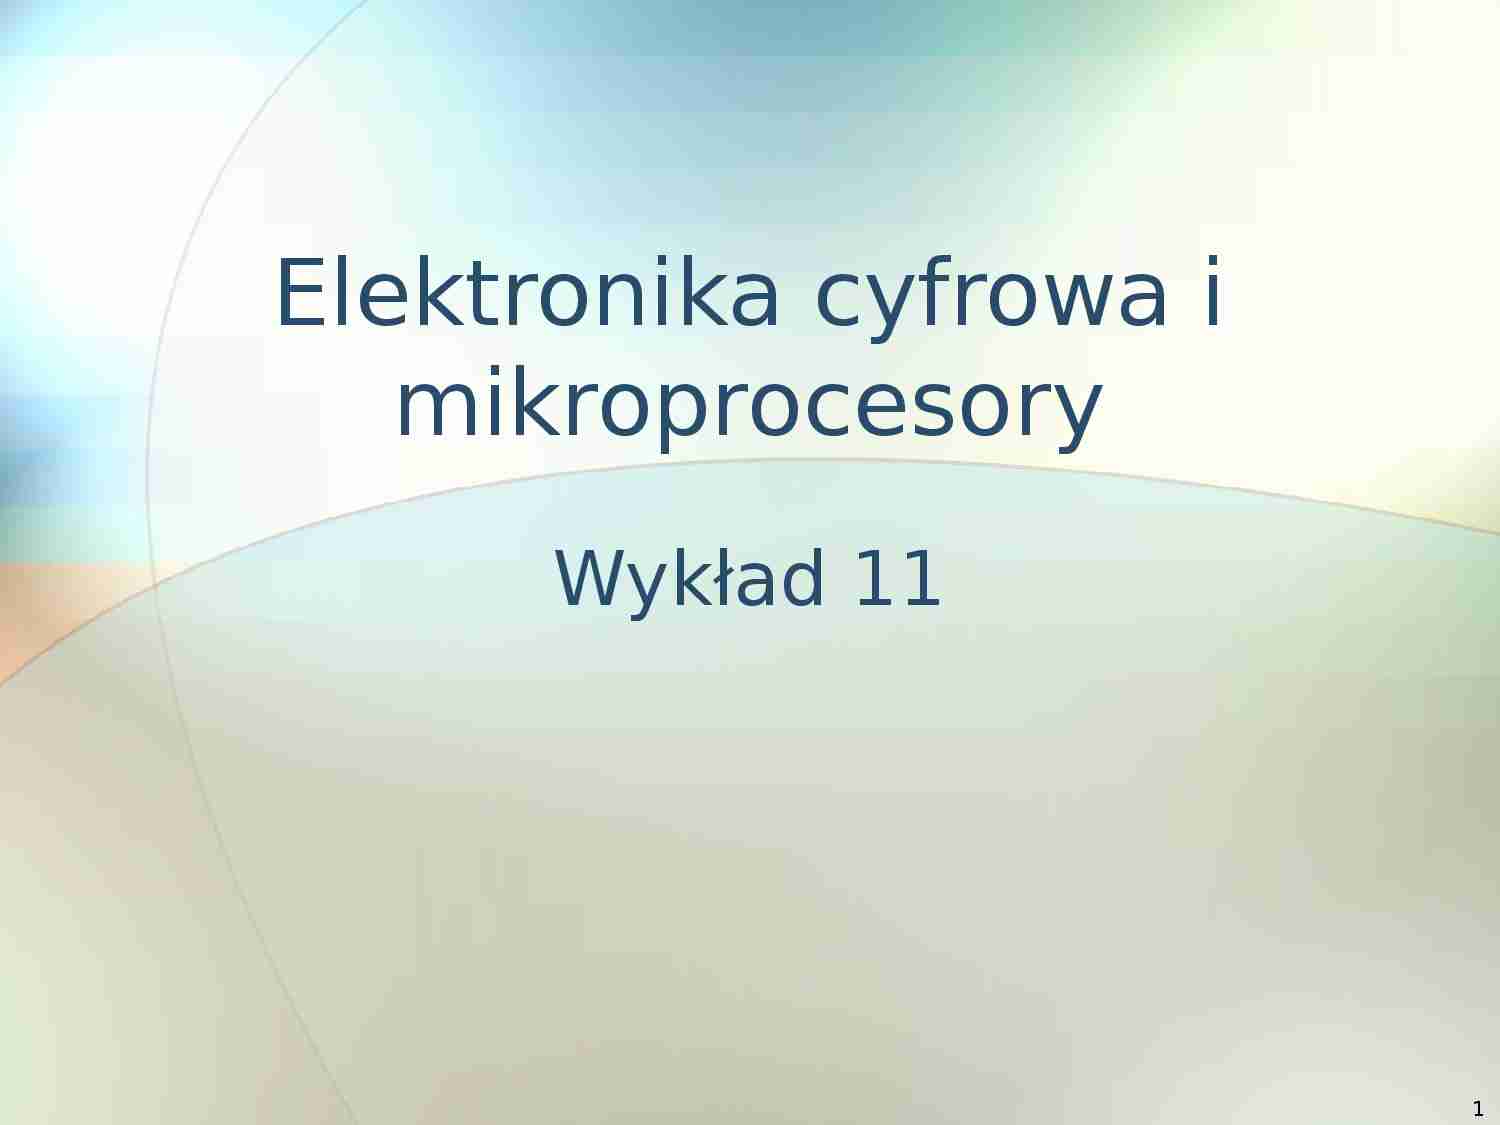 Elektronika cyfrowa i mikroprocesory - prezentacja - Instrukcje Intel IA32, Zestawy instrukcji - strona 1